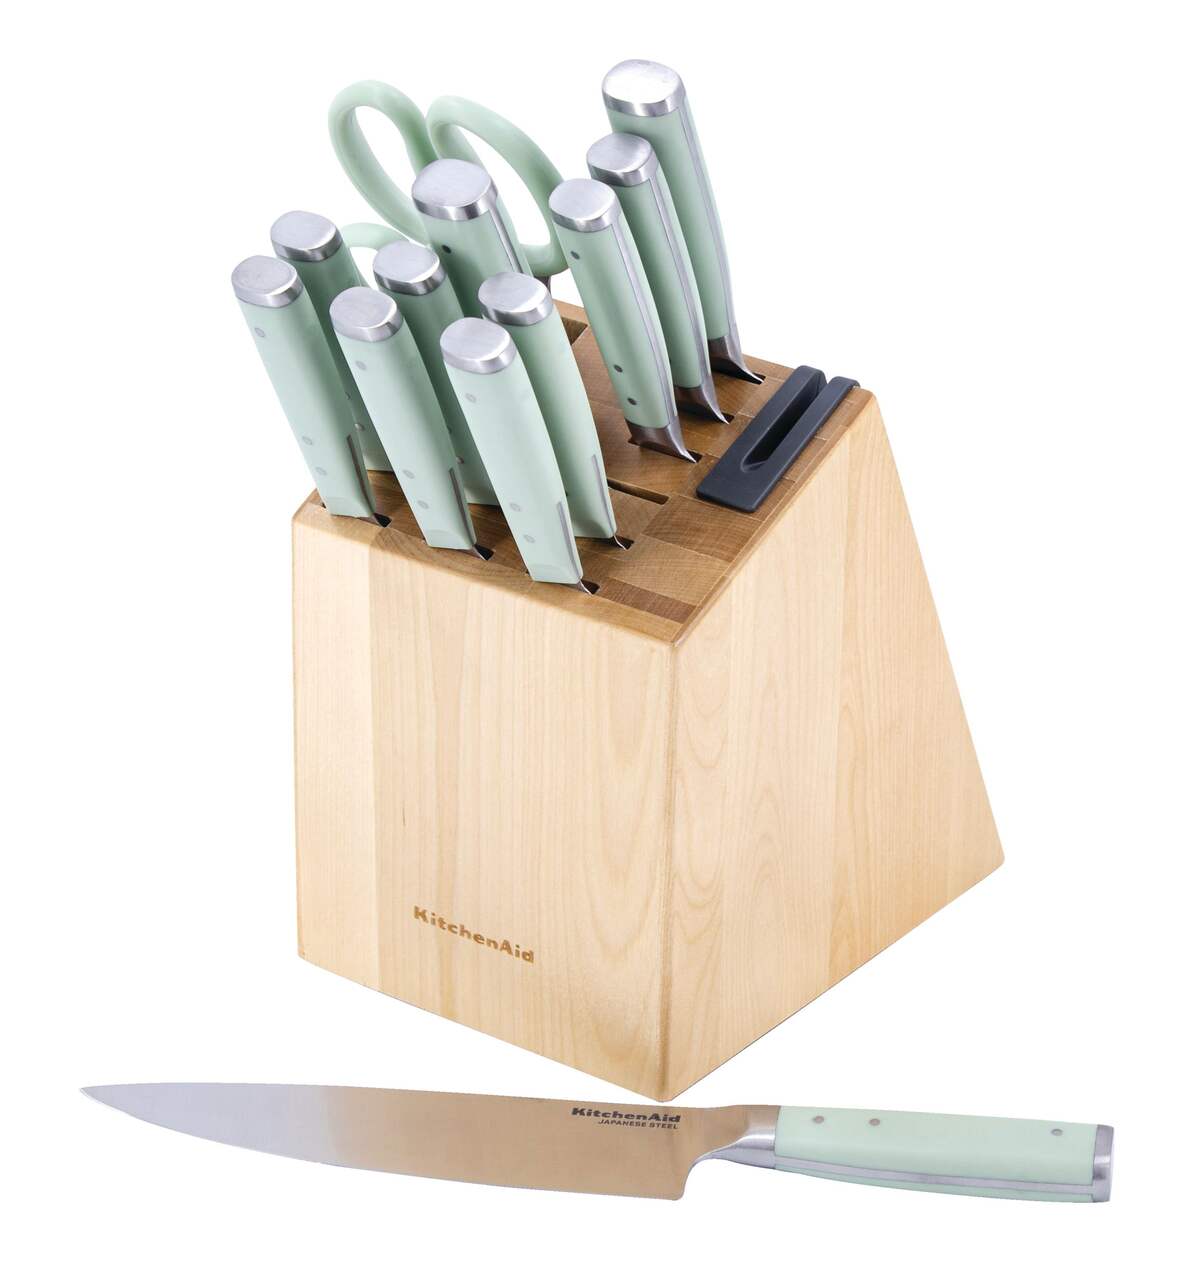 Bloc de bois forgé avec couteaux à trois rivets forgés classiques  KitchenAid avec affûteur intégré, pistache, 14 pièces